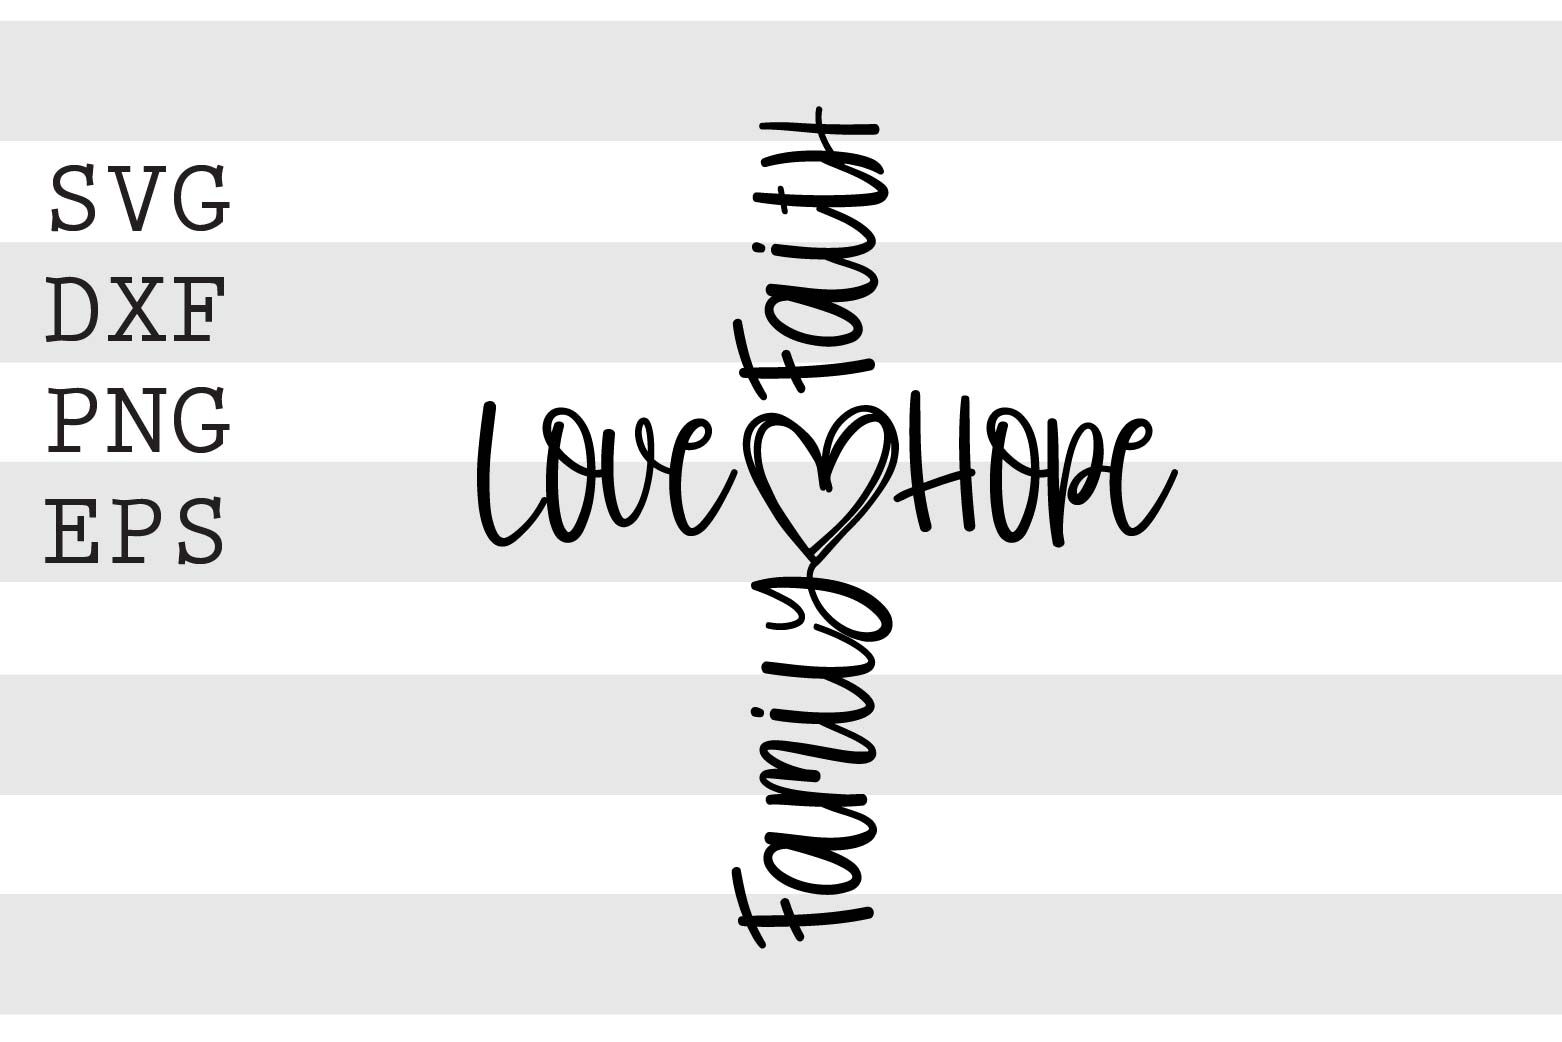 faith love hope family